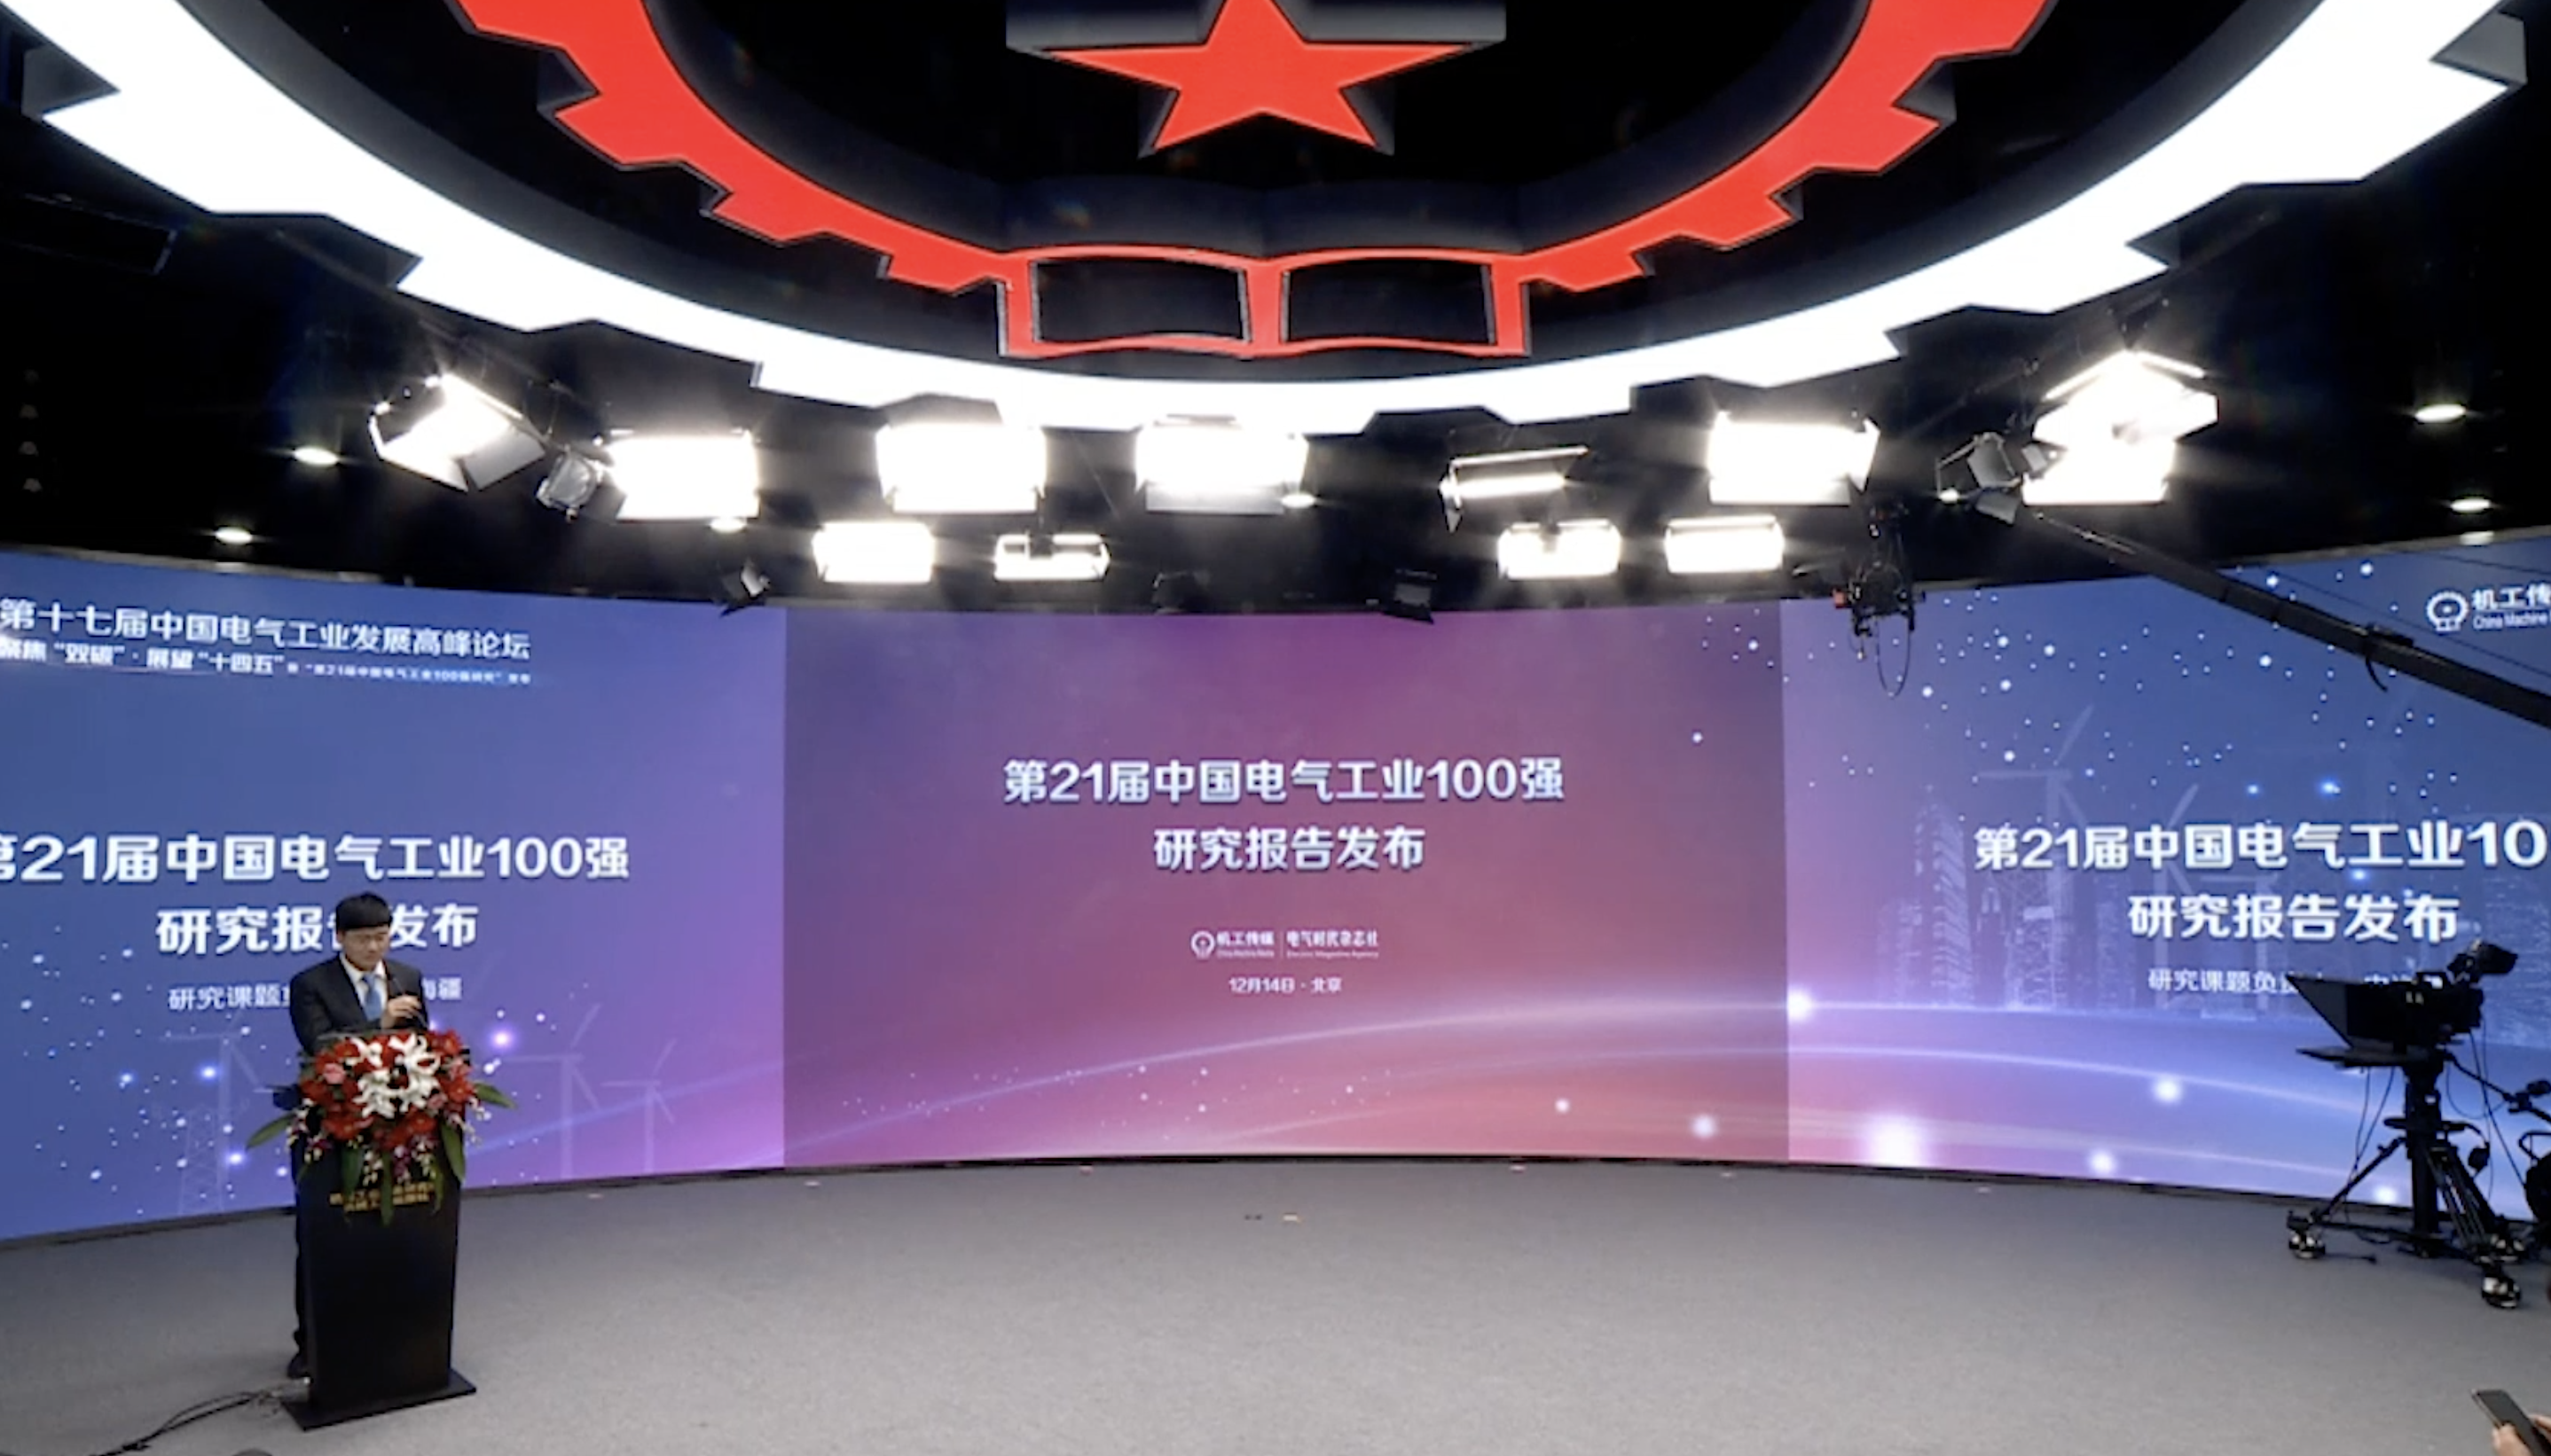 100强名单研究报告发布-第21届中国电气工业100强